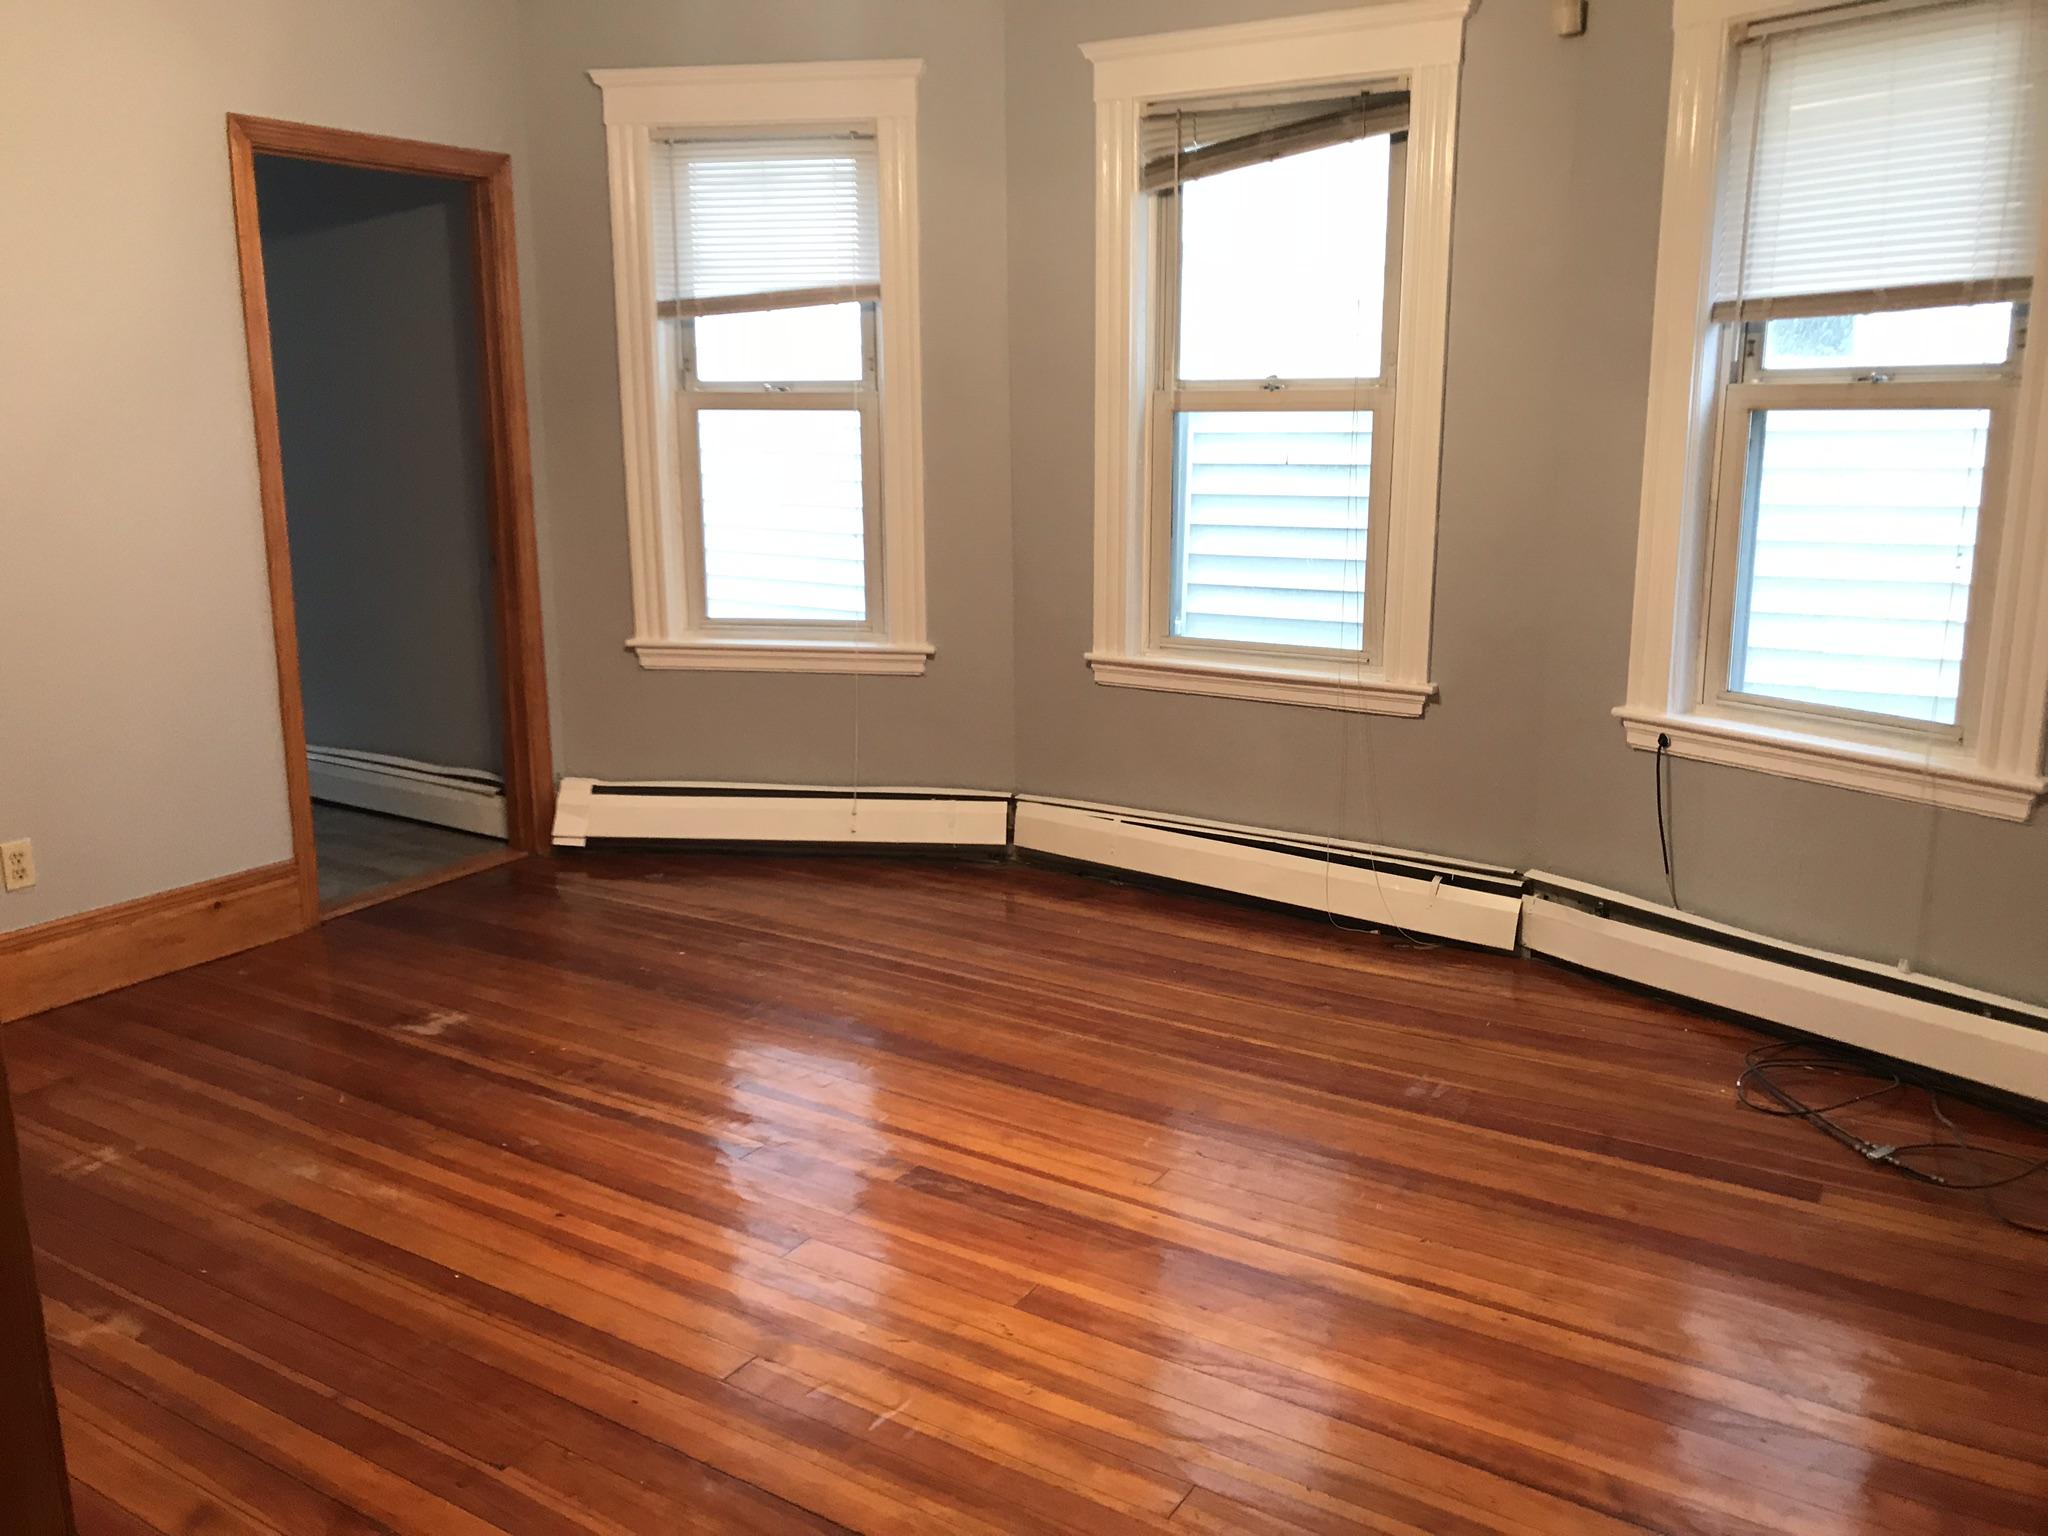 Photos of apartment on Wilcock St.,Boston MA 02124